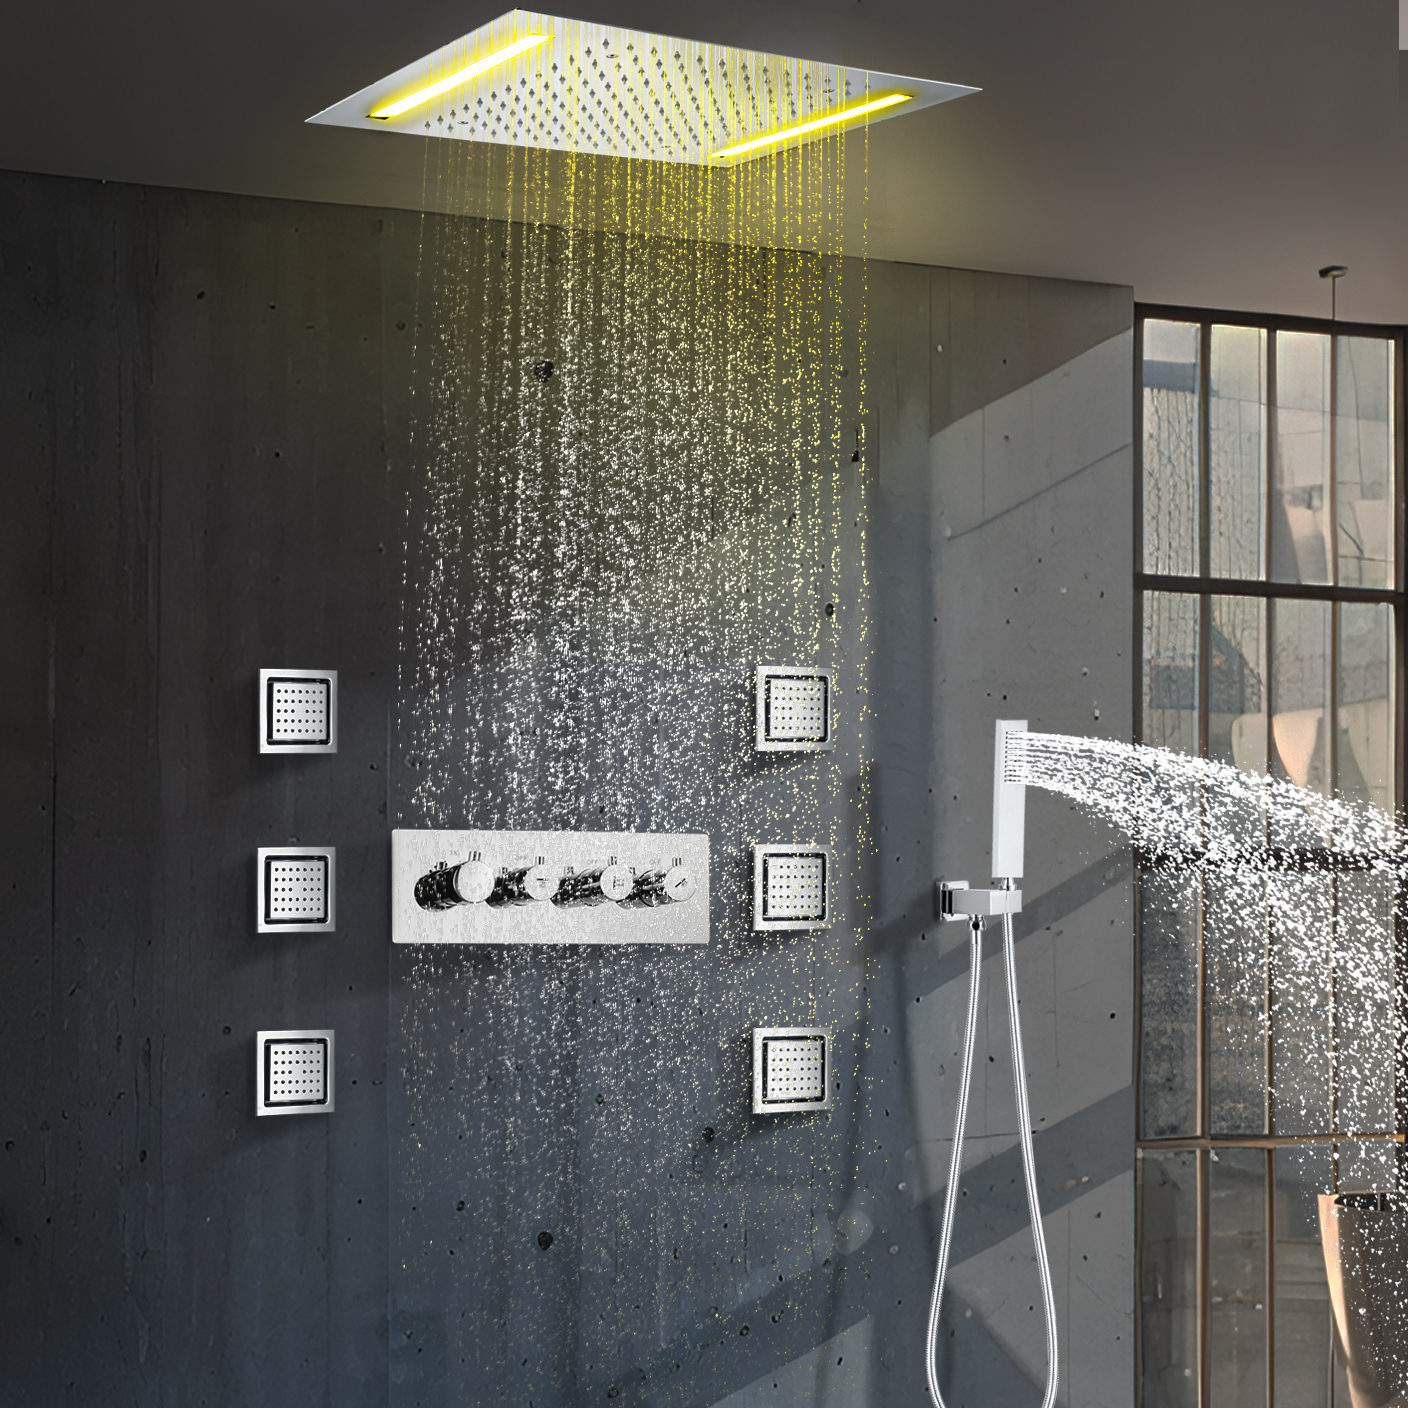 مطلي بالكروم 50x36 سنتيمتر تركيب السقف LED مربع التدفئة صمام الأمطار دش نظام صنبور المياه